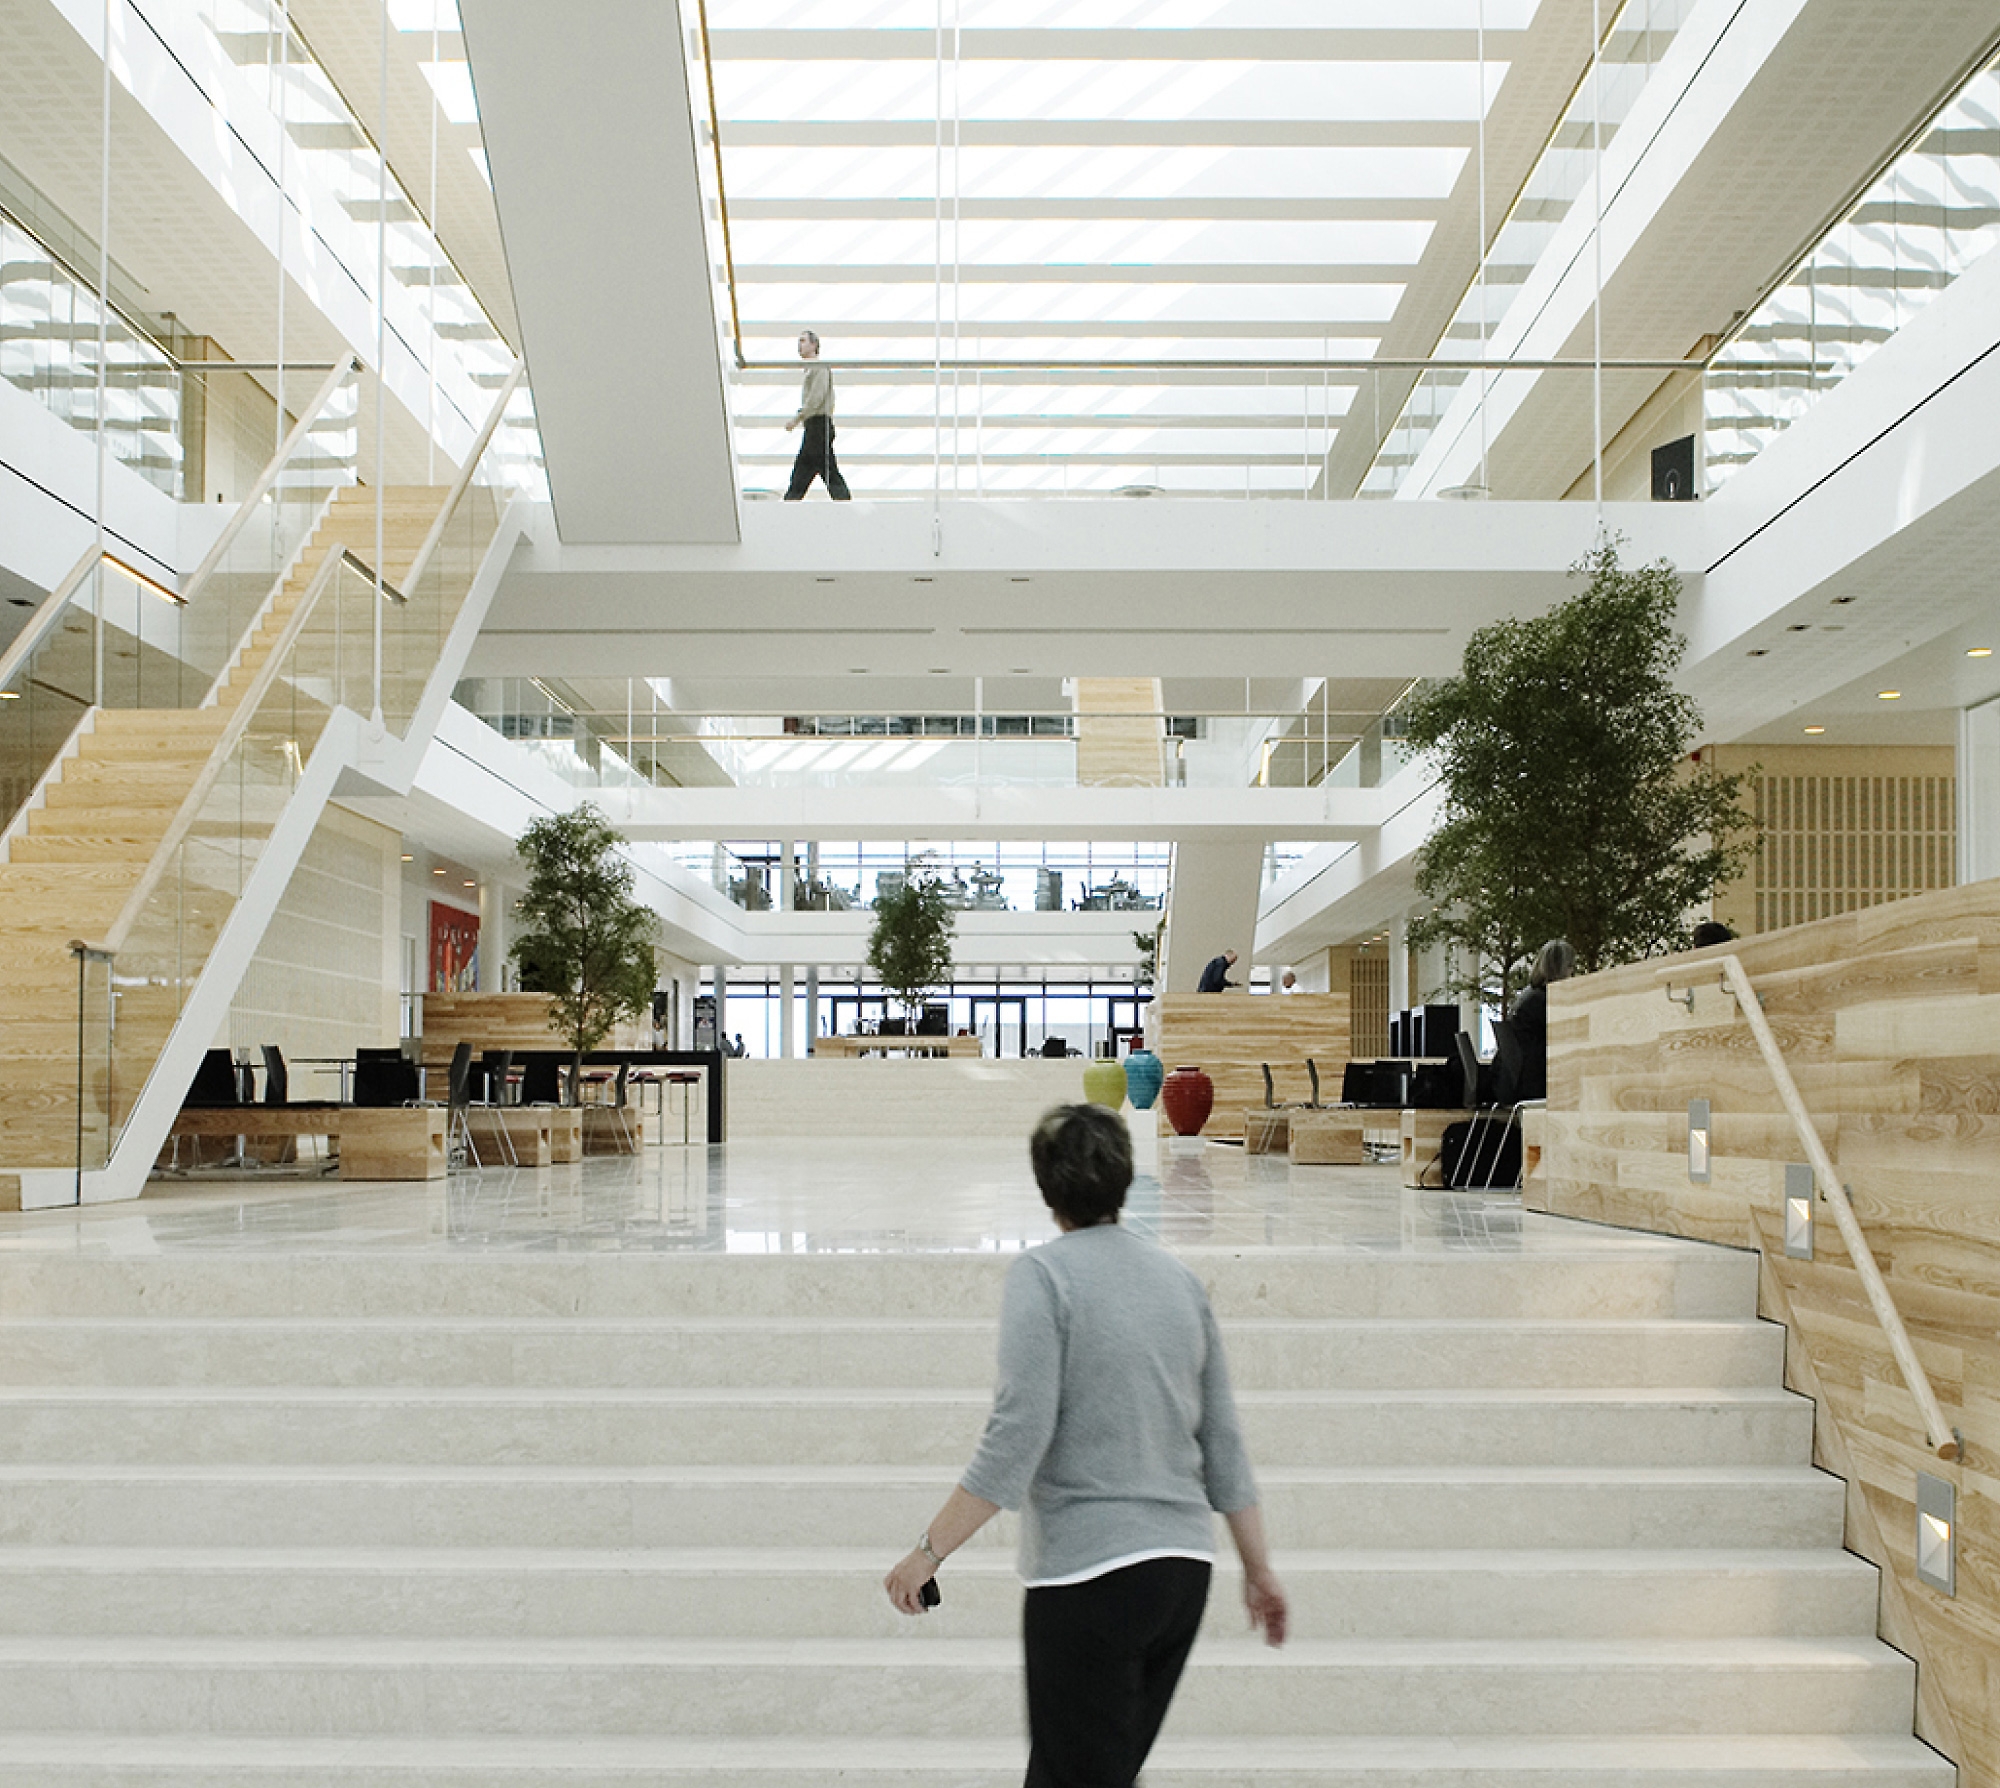 Современный офисный вестибюль с большими белыми лестницами, деревянными акцентами и гуляющими людьми. яркая и воздушная атмосфера.